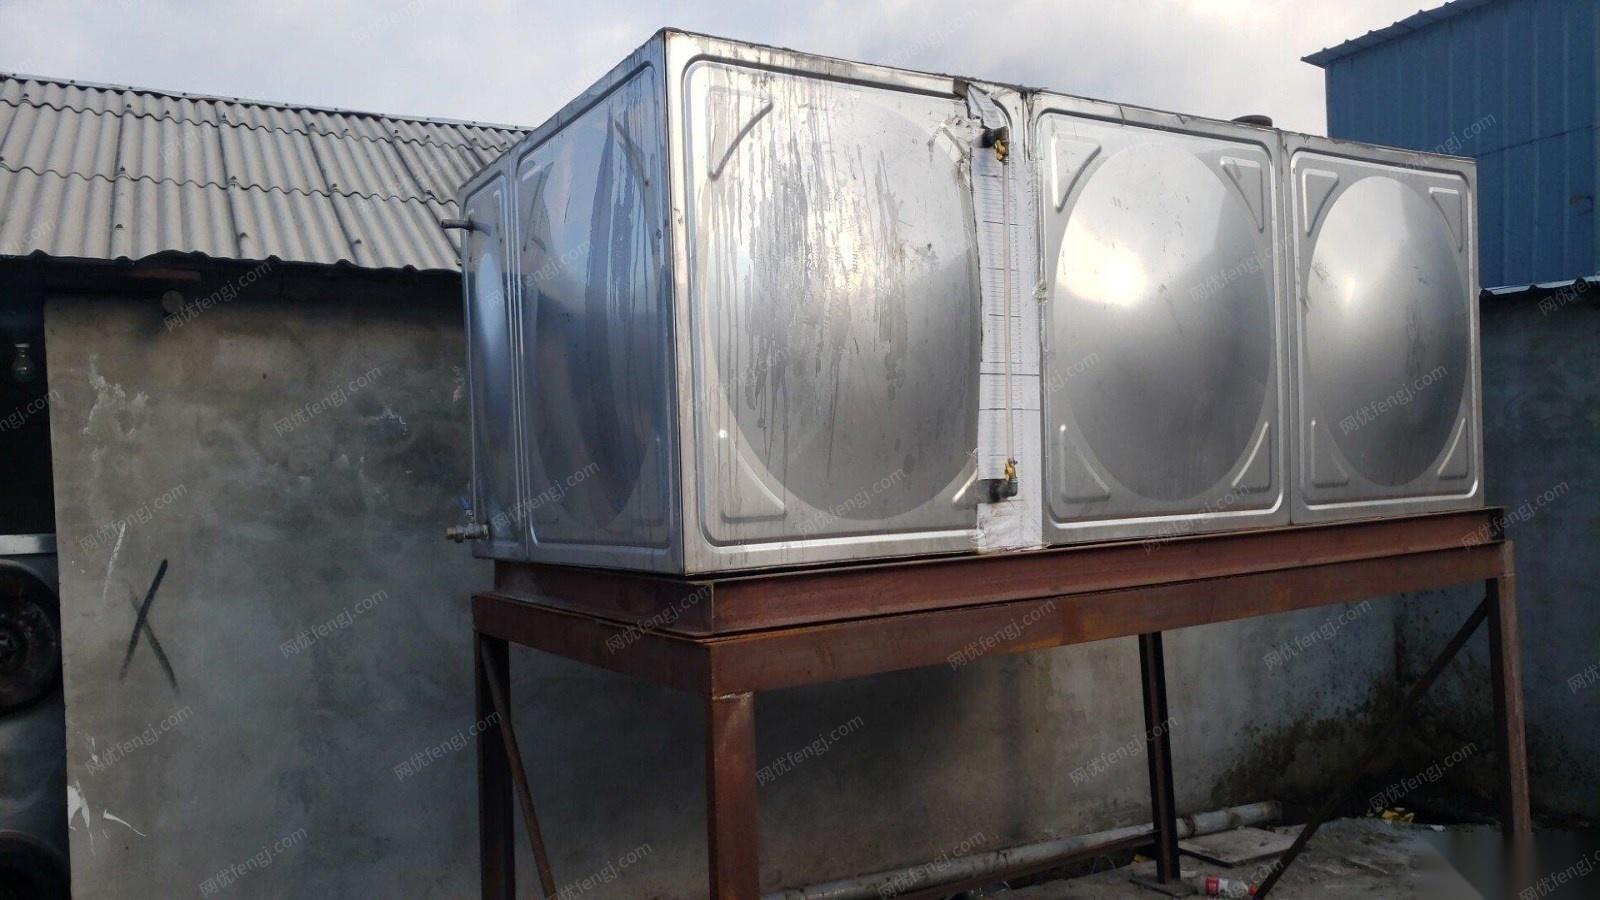 黑龙江哈尔滨出售不锈钢4吨水箱油箱 10000元